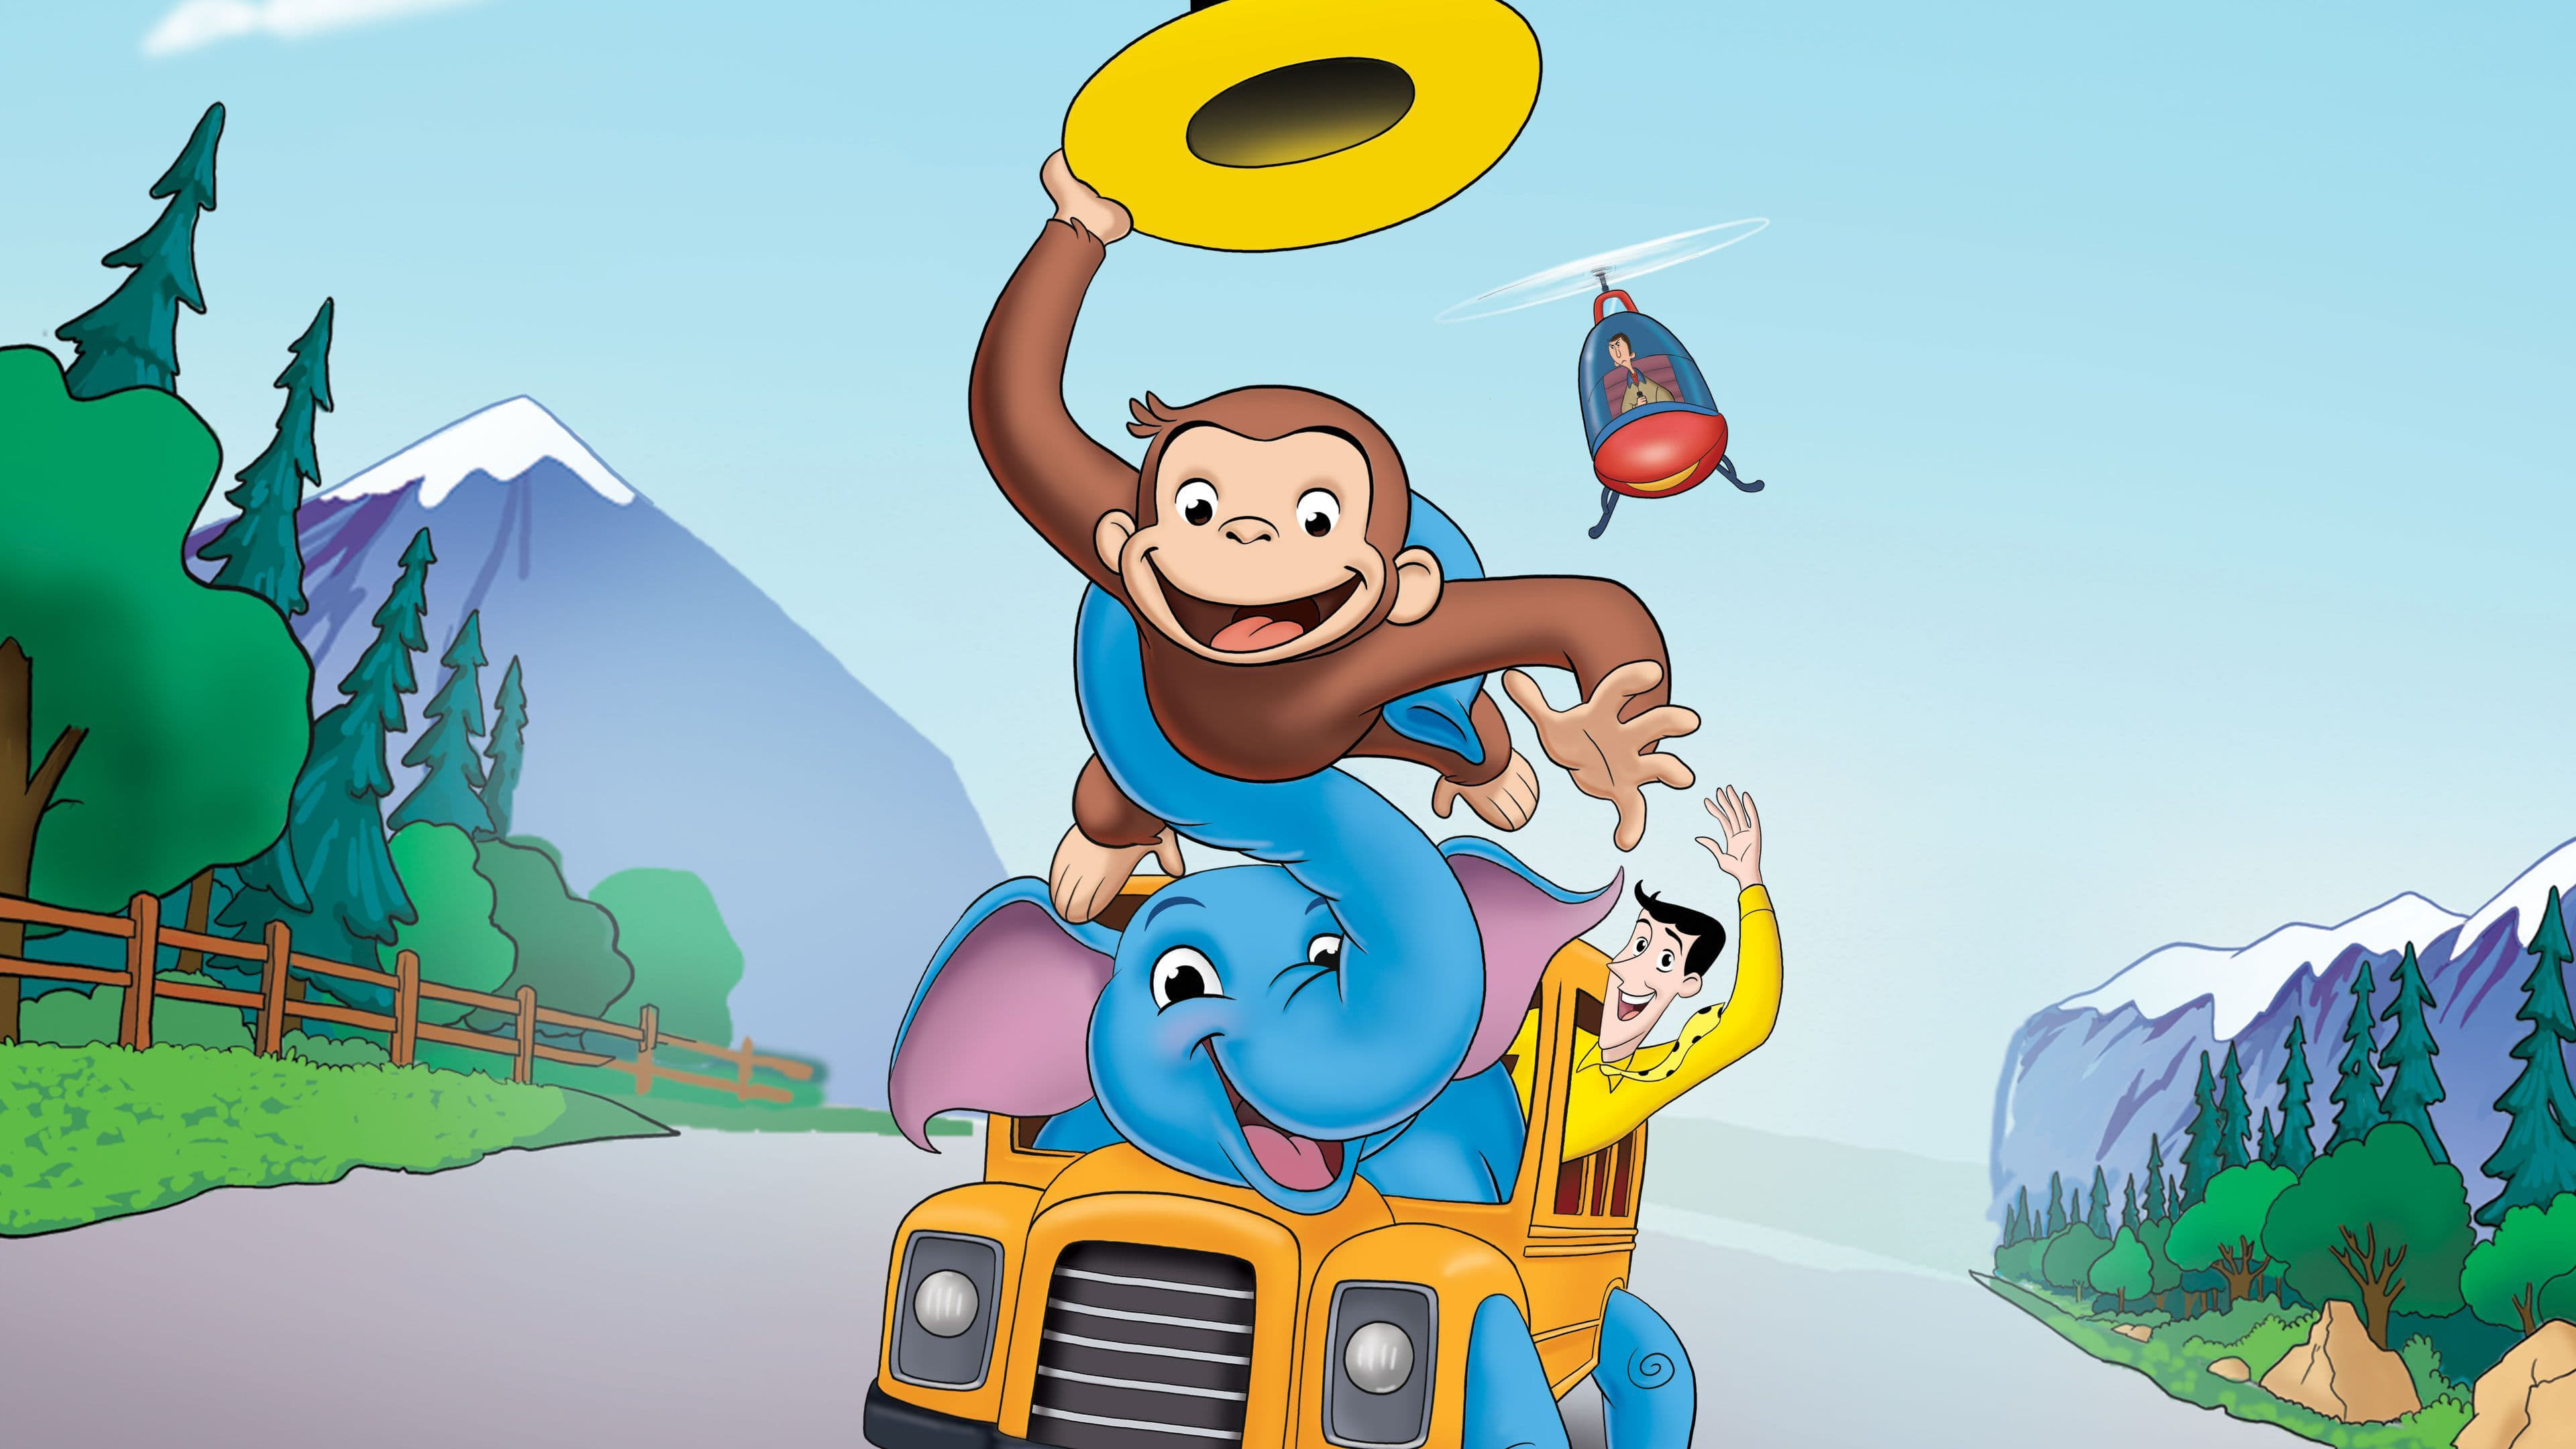 Xem Phim George tò mò 2: Đuổi theo chú khỉ đó! (Curious George 2: Follow That Monkey!)